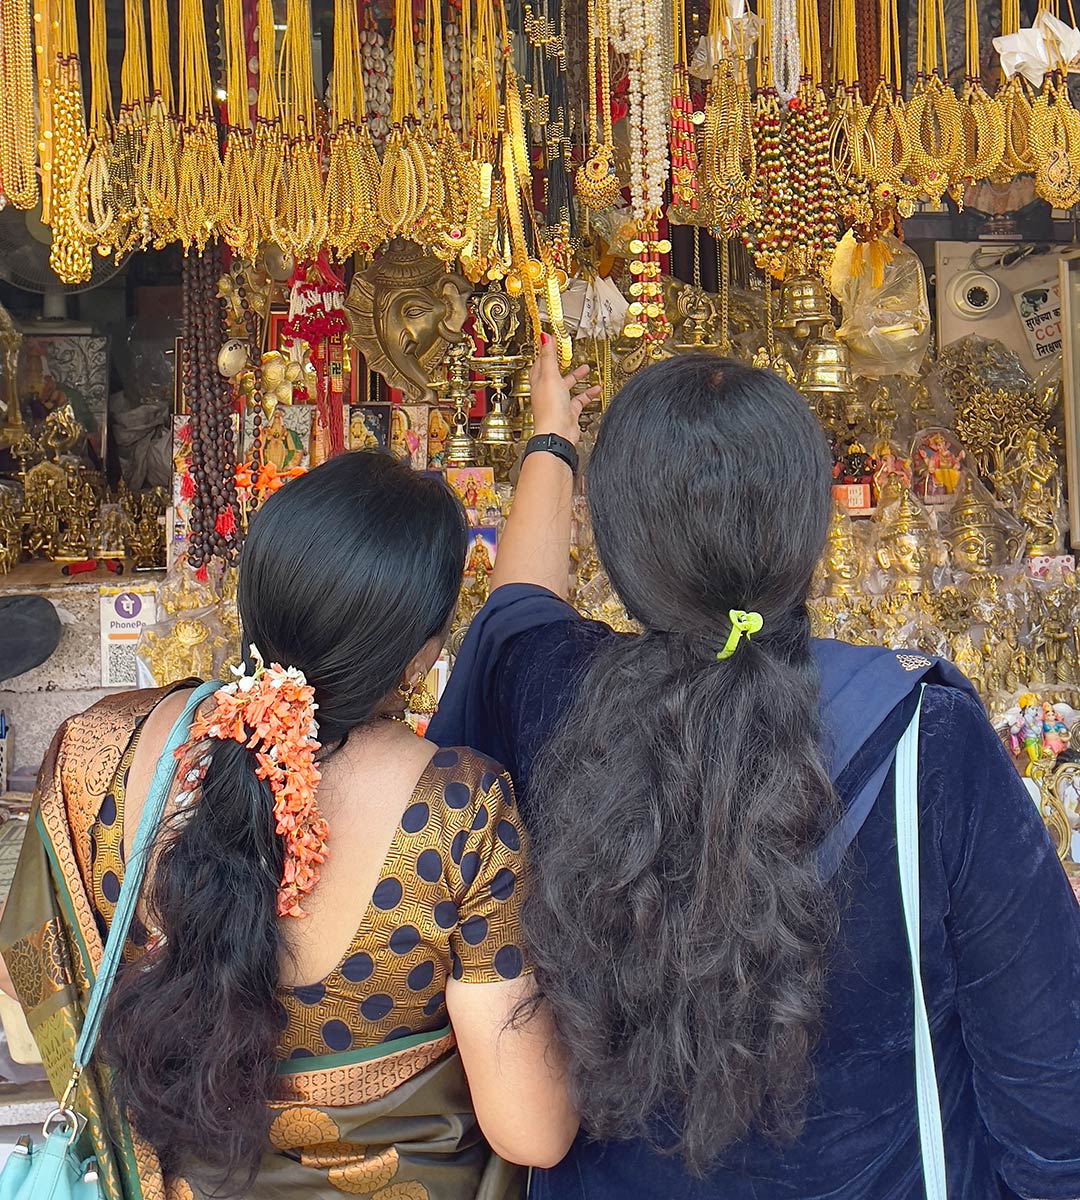 Templo de Mahalakshmi, Kolhapur. Mulheres na loja de peregrinos vendendo artigos religiosos.